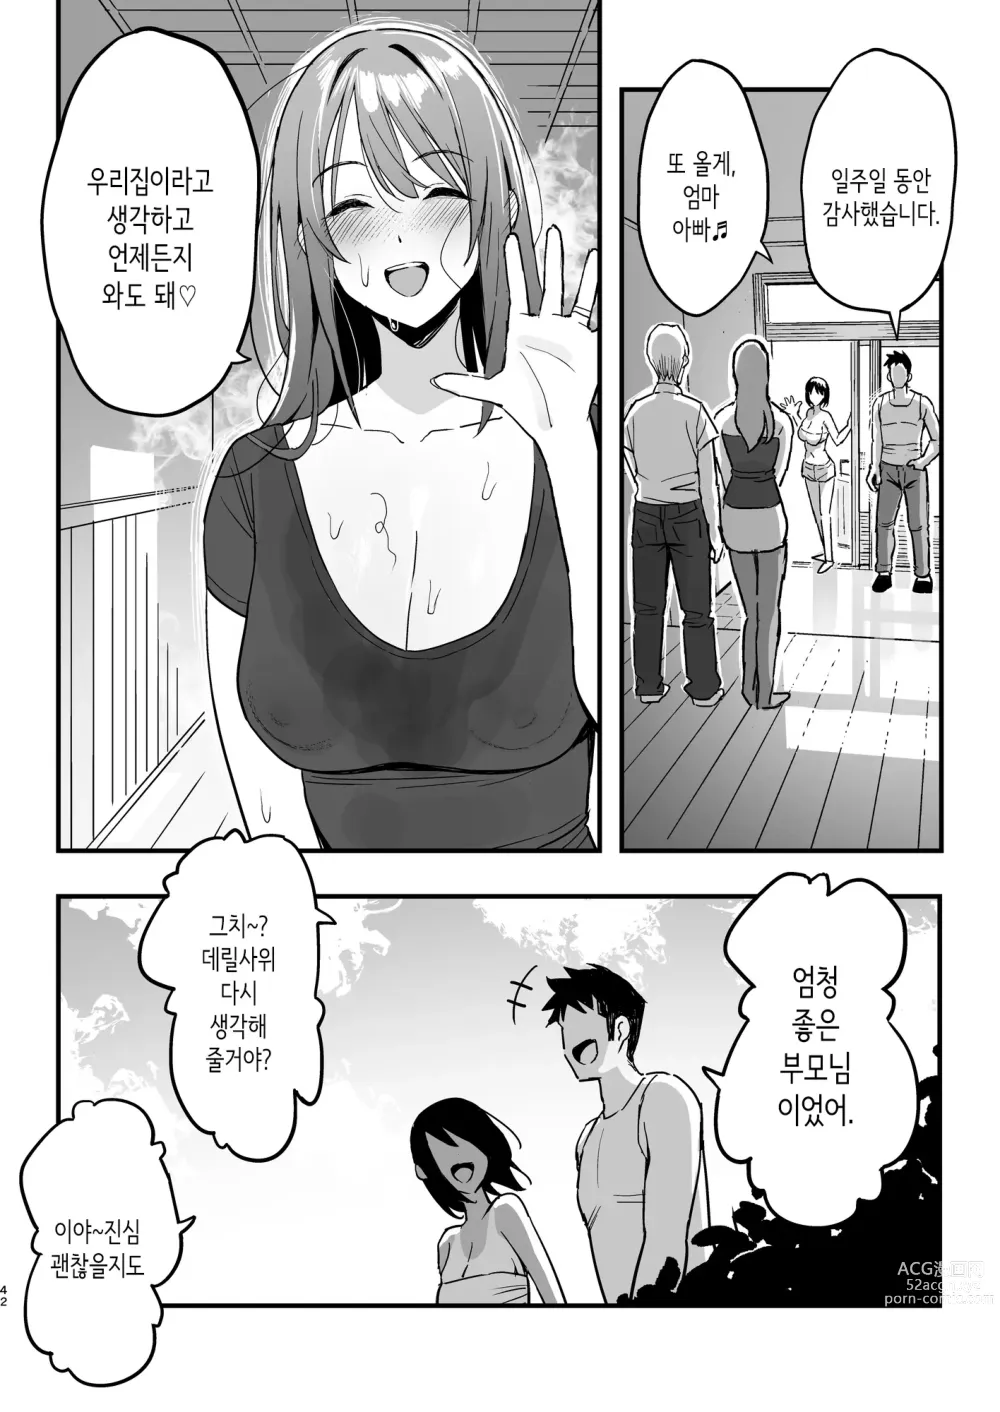 Page 41 of doujinshi 여친의 엄마는 마마카츠 엄마였다.